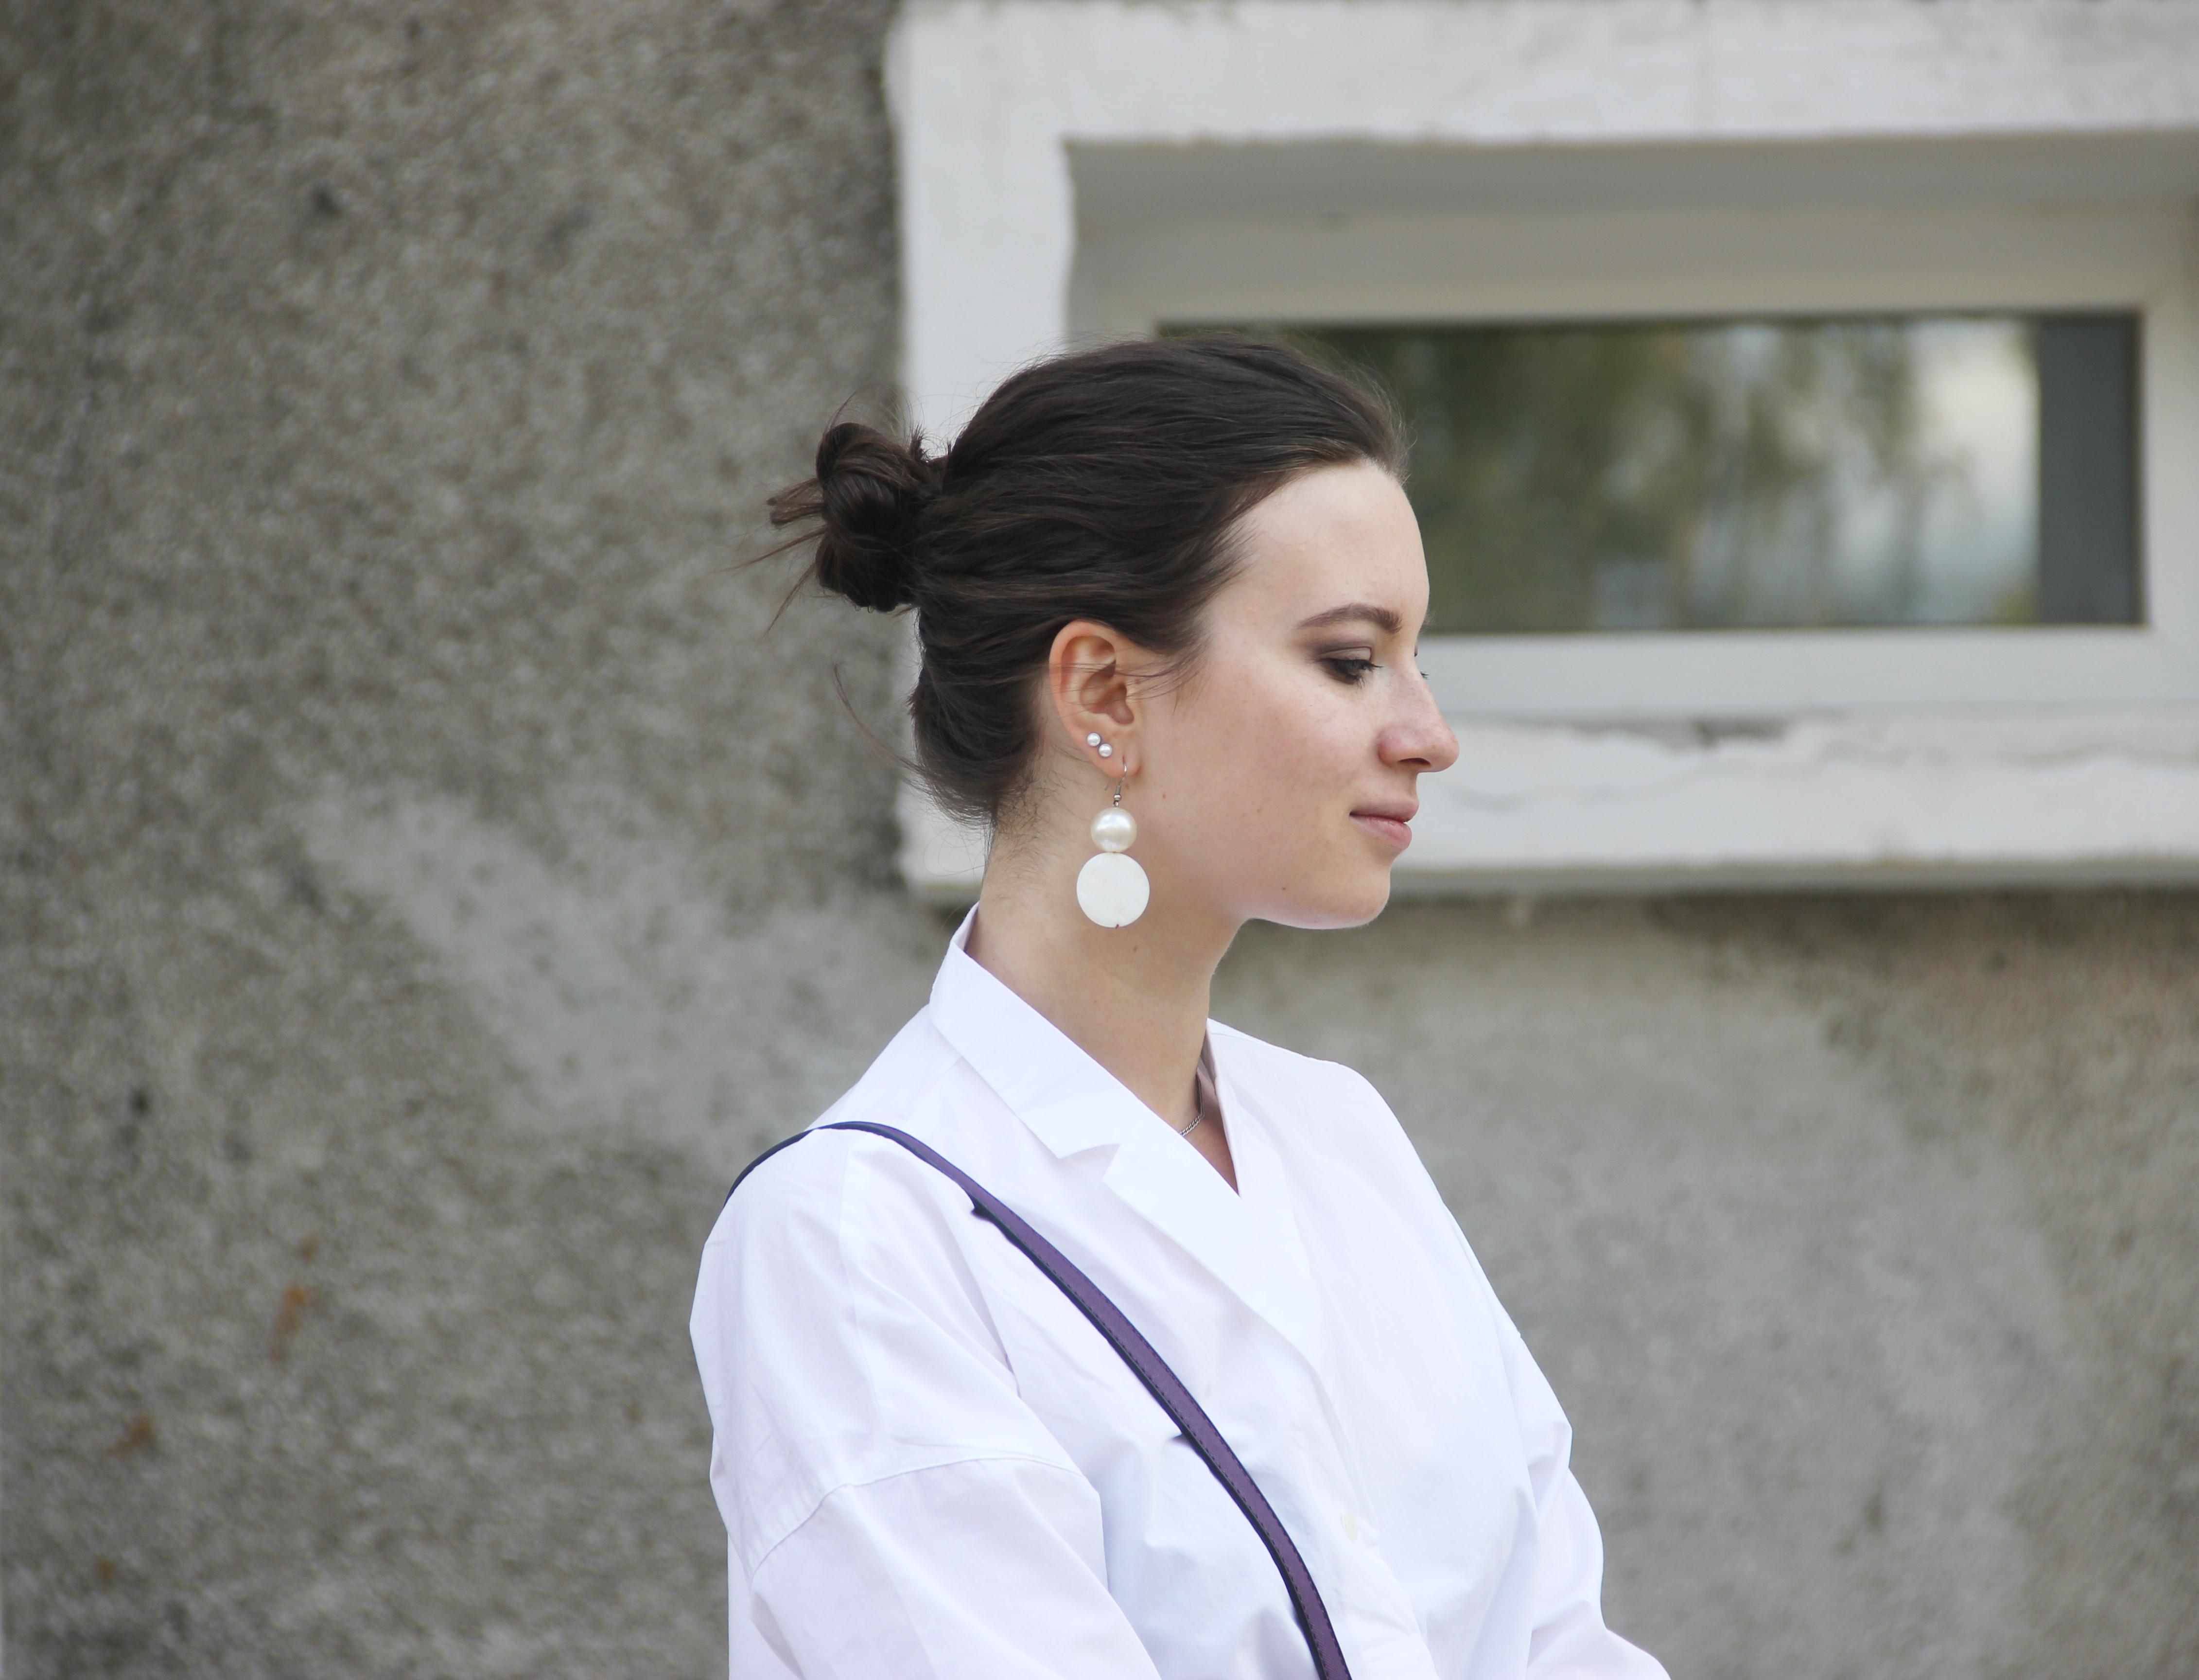 Переработка дня: студентка НИУ ВШЭ Дарья Денисова создает новую одежду из старой униформы 